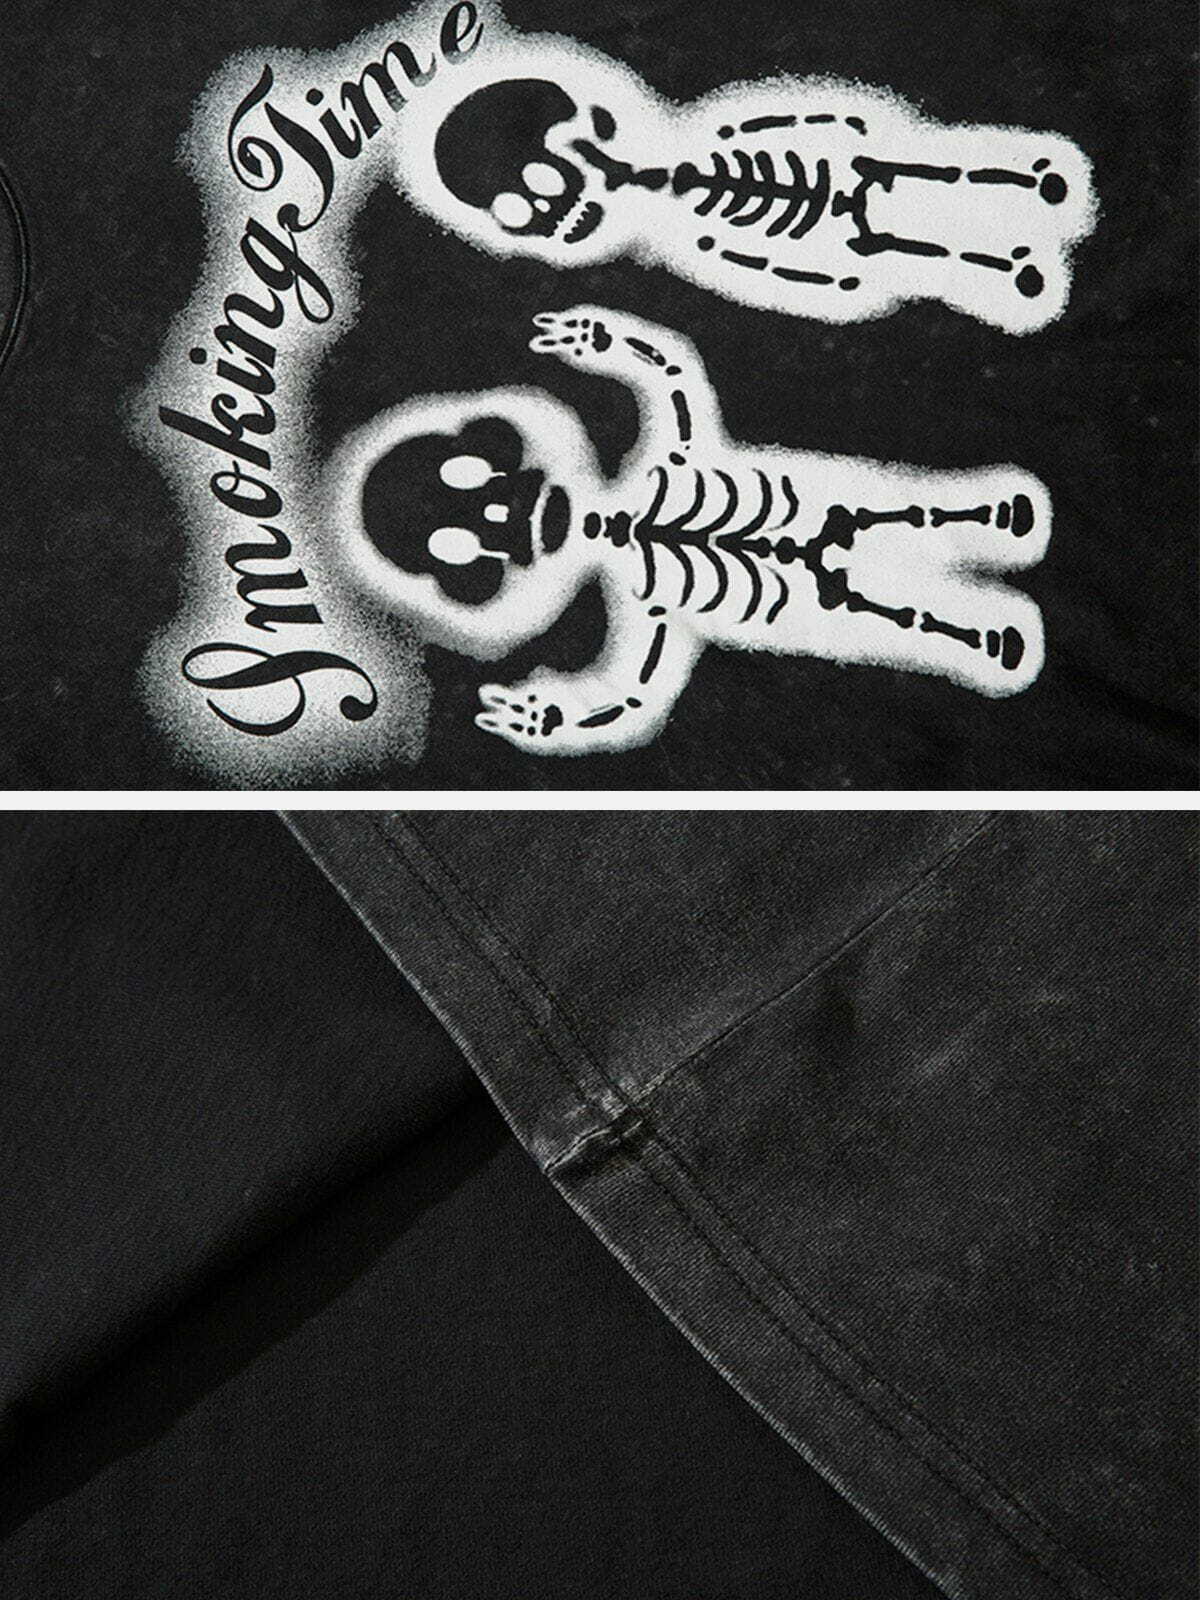 retro skeleton tee edgy streetwear essential 8529